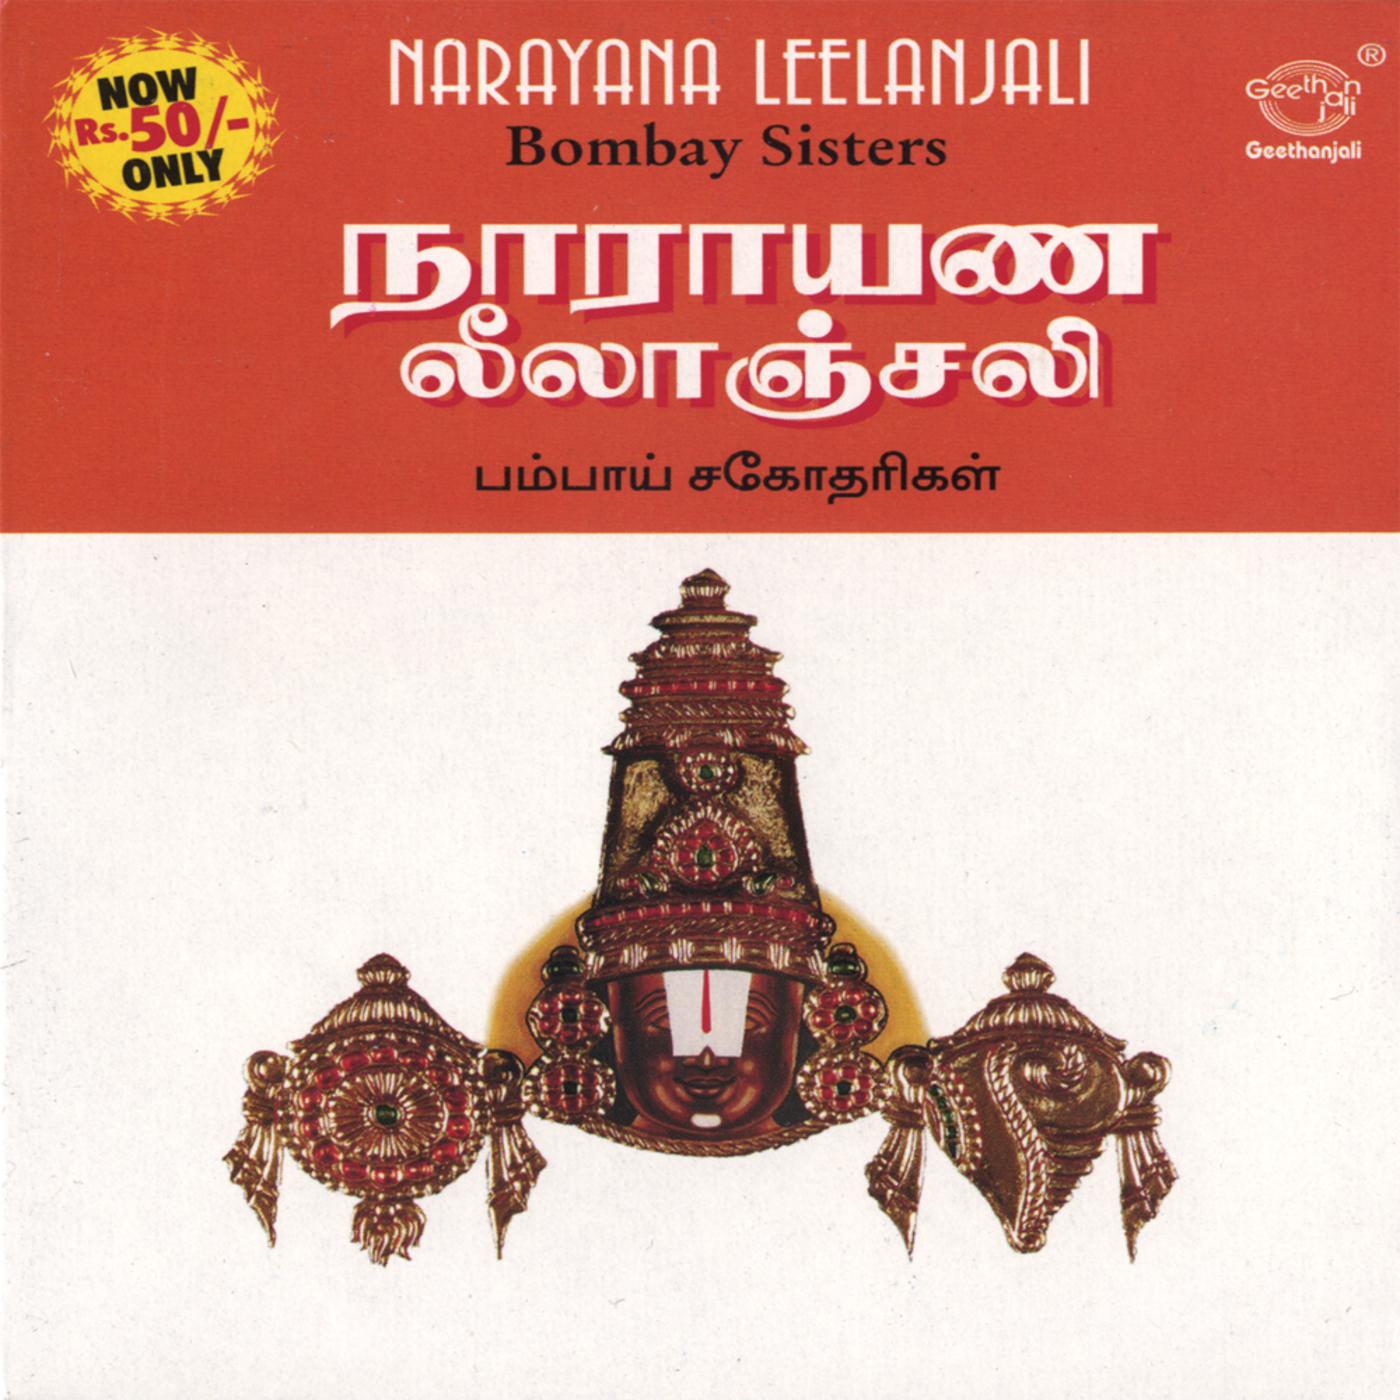 Om Namo Narayana -- Thiruvengadavane